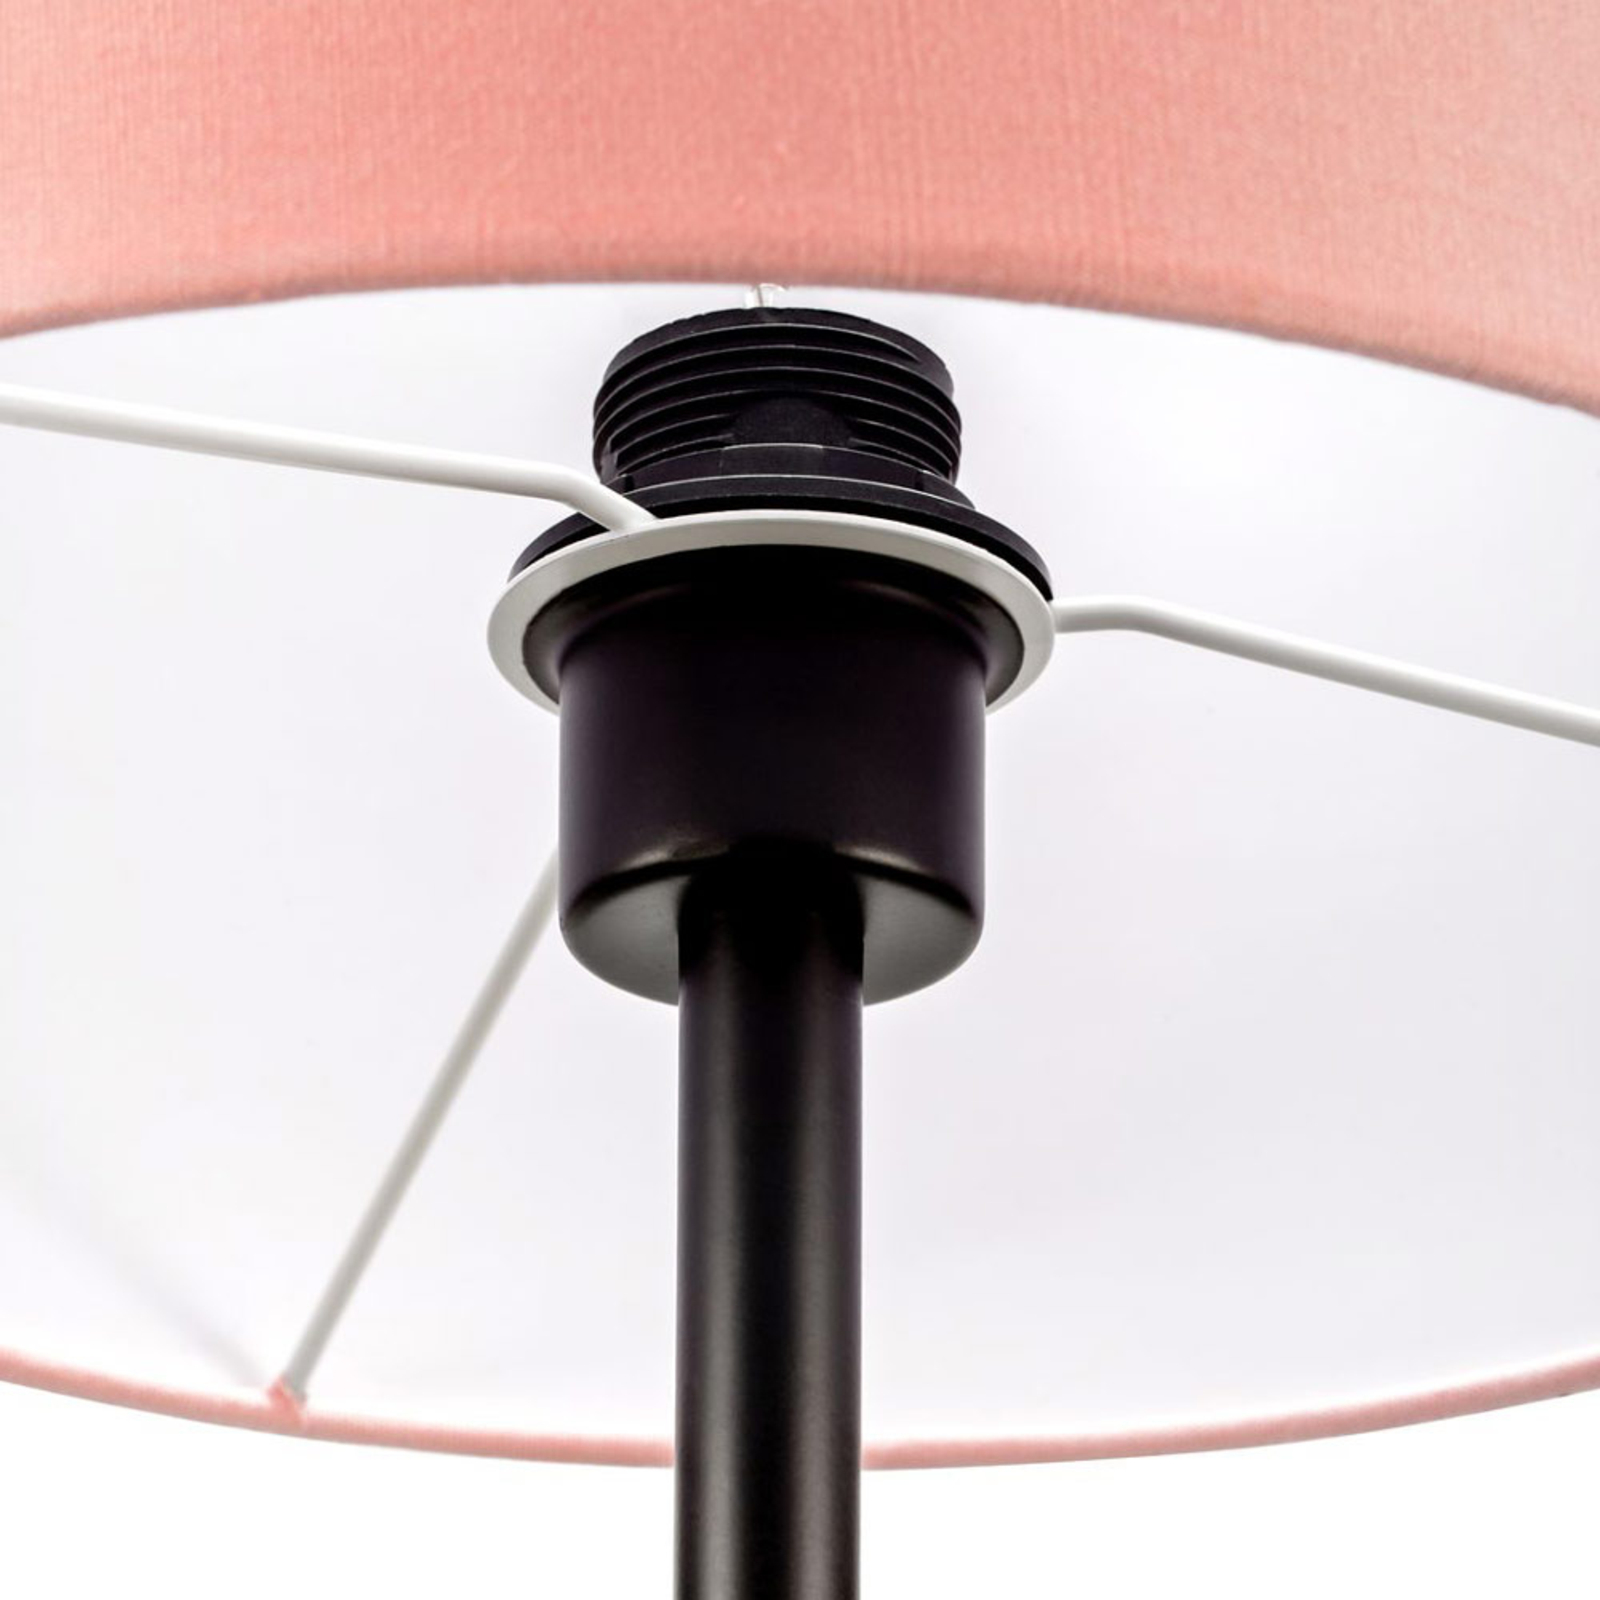 Pauleen Grand Reverie vloerlamp in roze/zwart